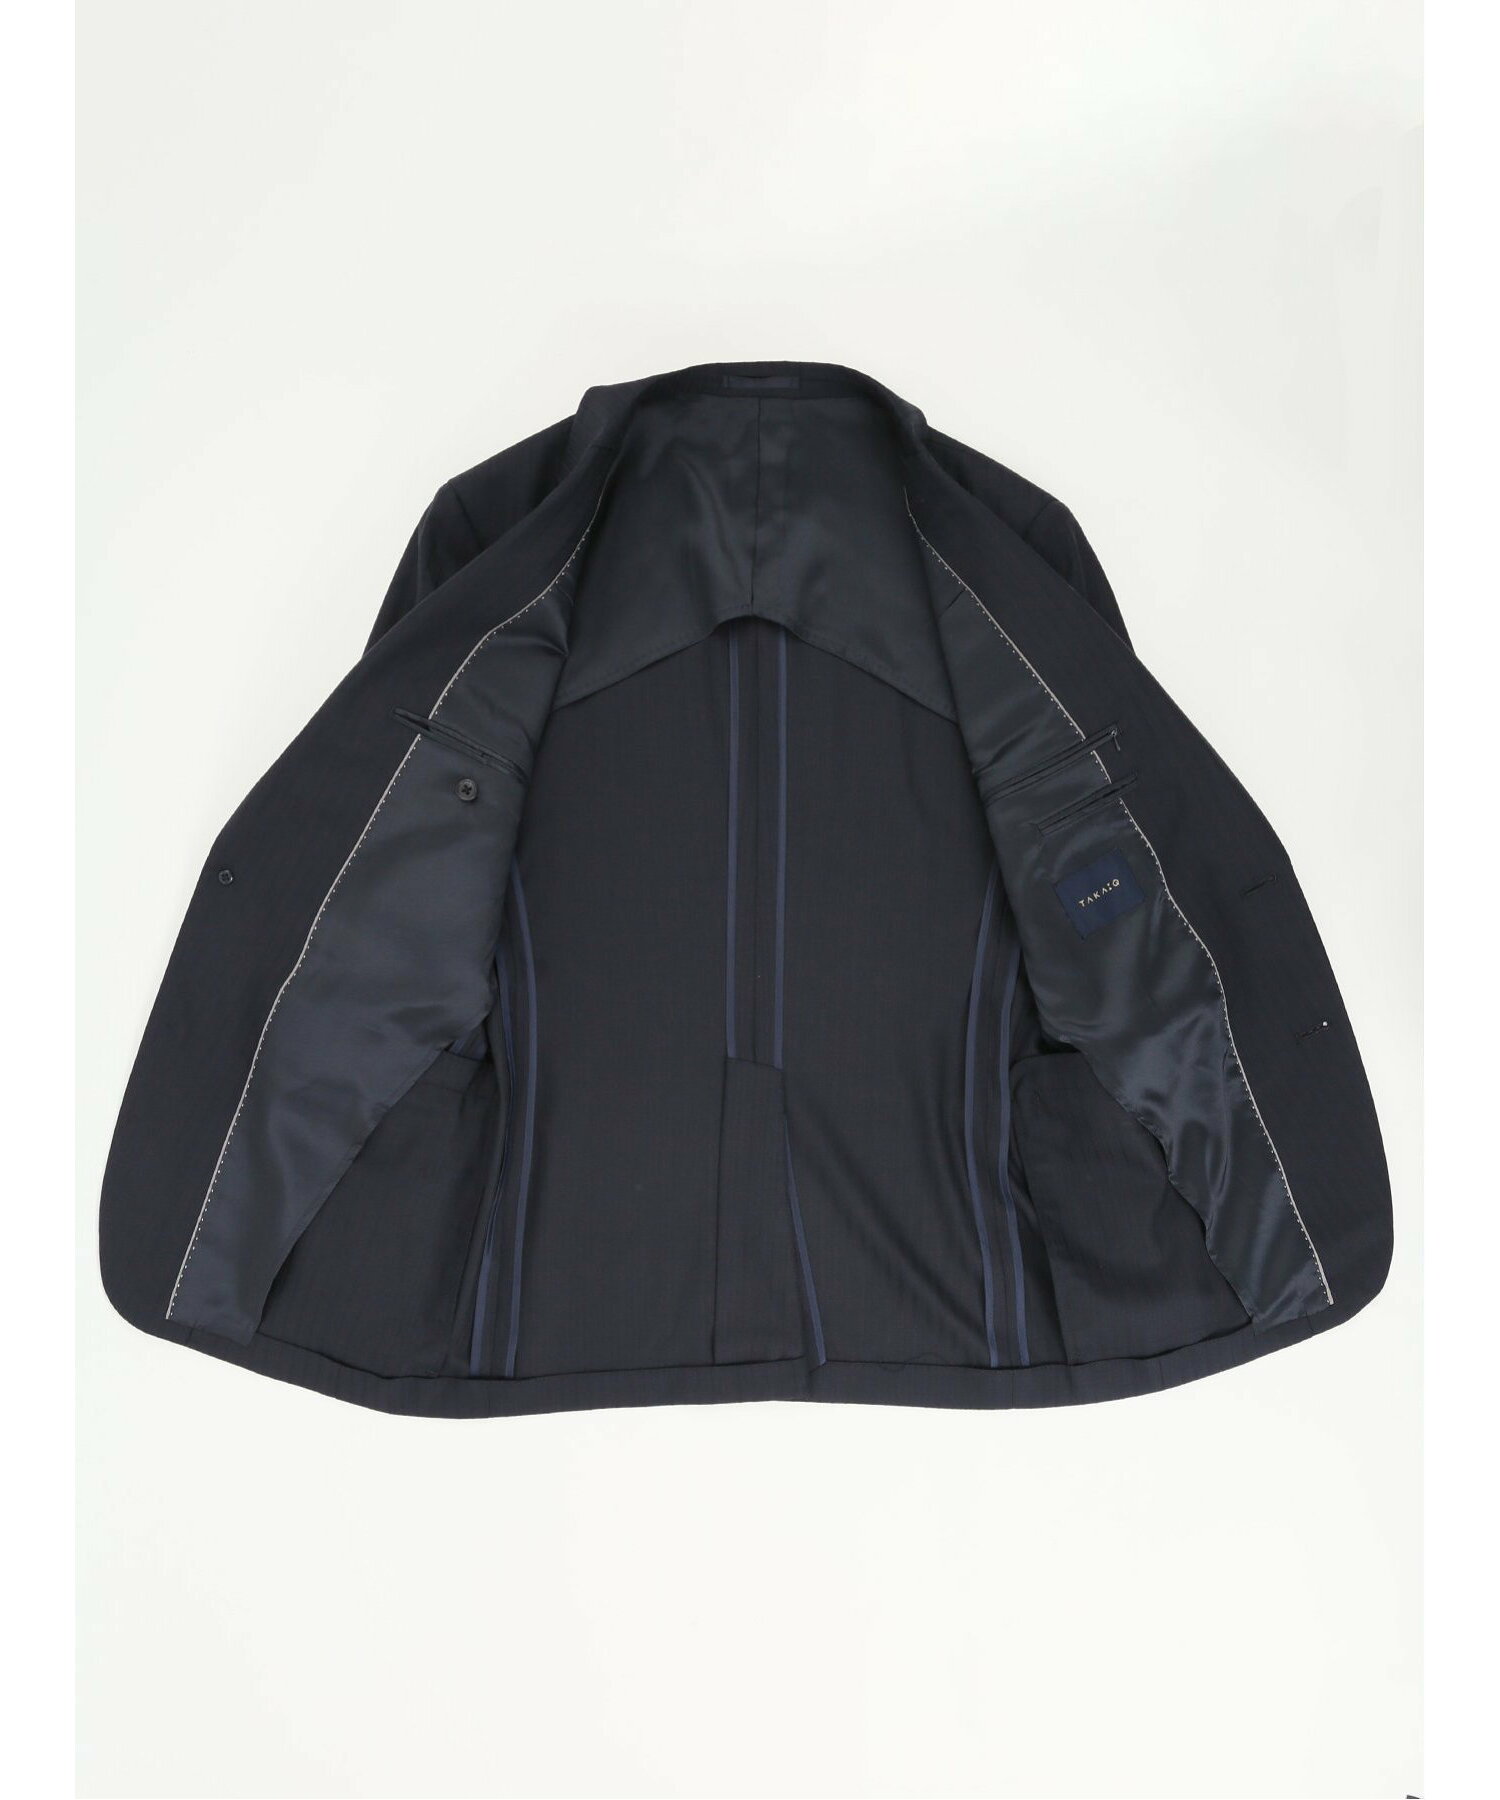 光沢ウール混 スリムフィット 2ボタン3ピーススーツ シャドーストライプ紺 セットアップ ジャケット ビジネス メンズ